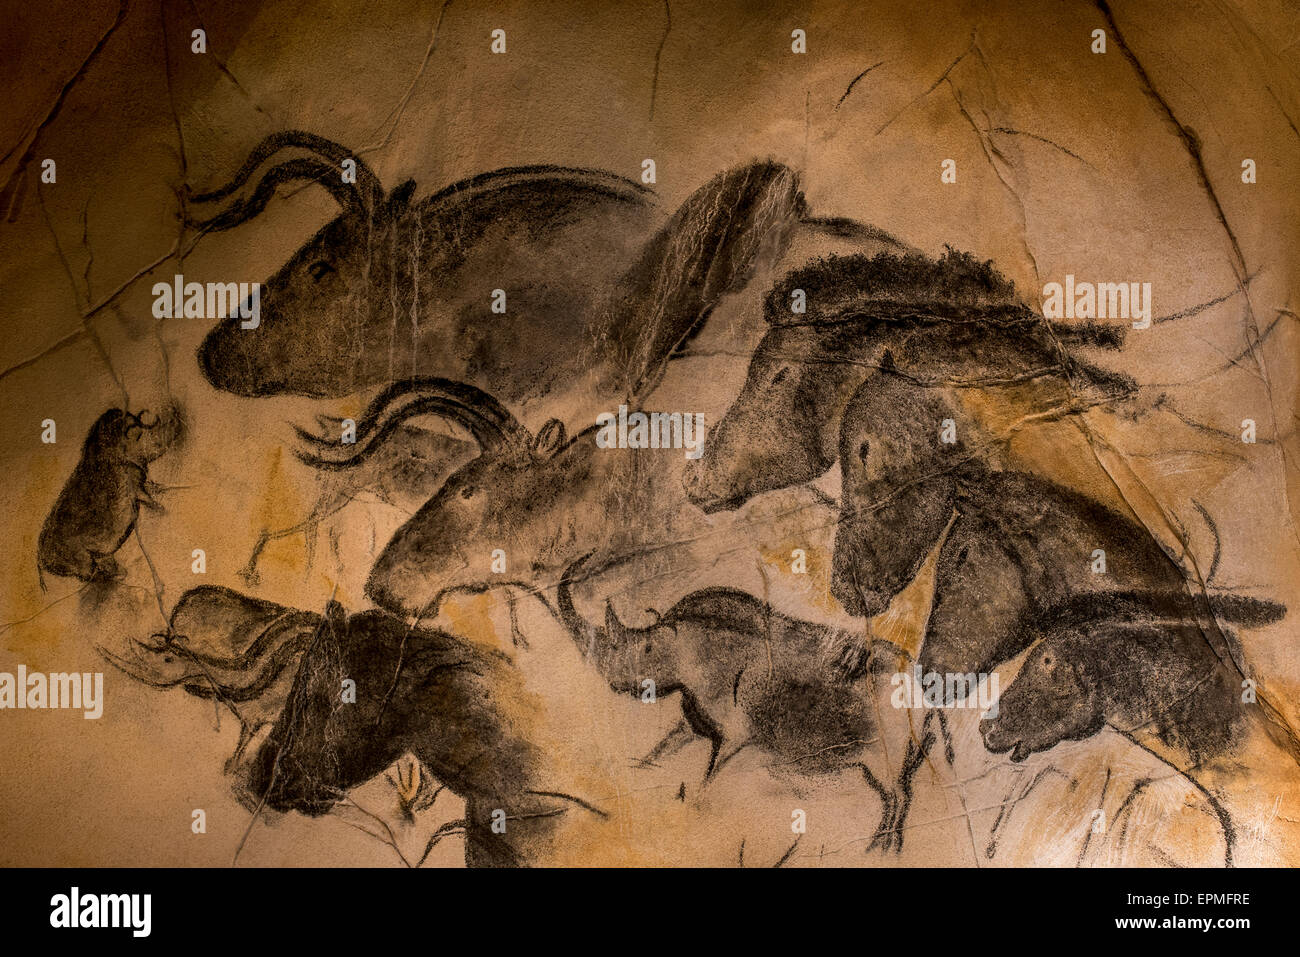 Réplica de pinturas rupestres de la cueva Chauvet-Pont-d'Arc, Ardèche, Francia, mostrando el rinoceronte lanudo, uros y caballos salvajes Foto de stock